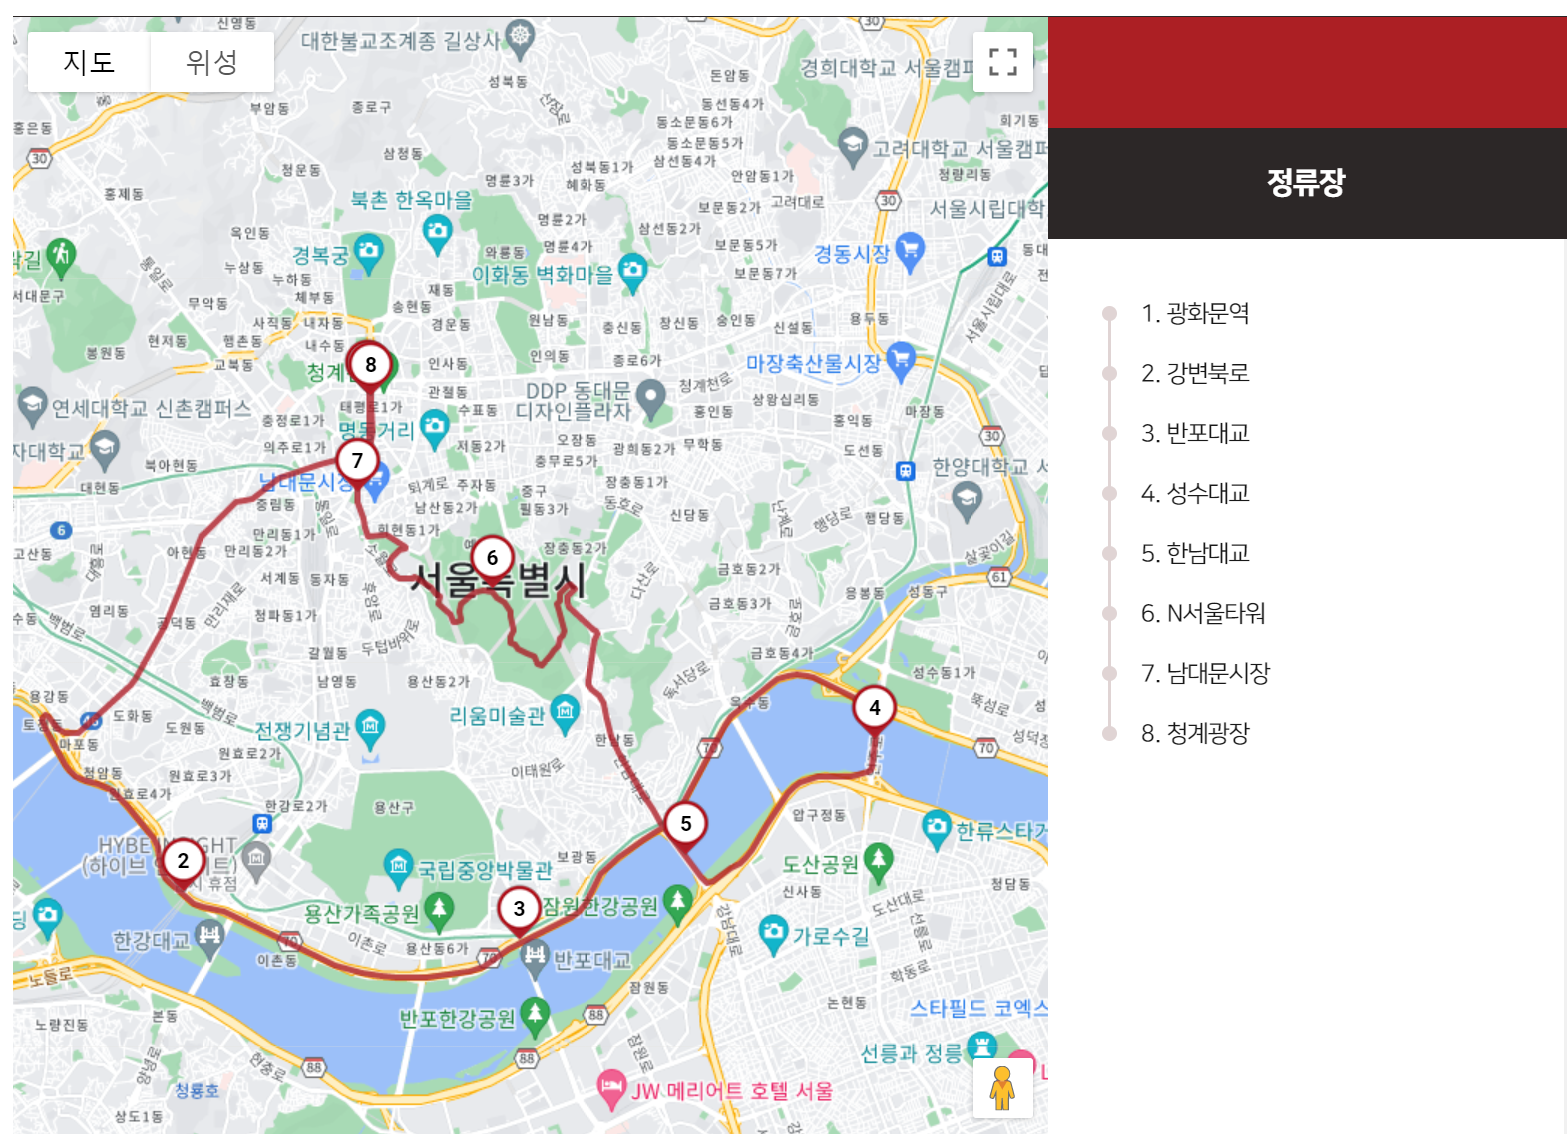 서울 시티 투어 버스 운행 시간표 코스 정보 정류장 위치 표 사는 곳 버스 종류 예약 방법 버스 요금4